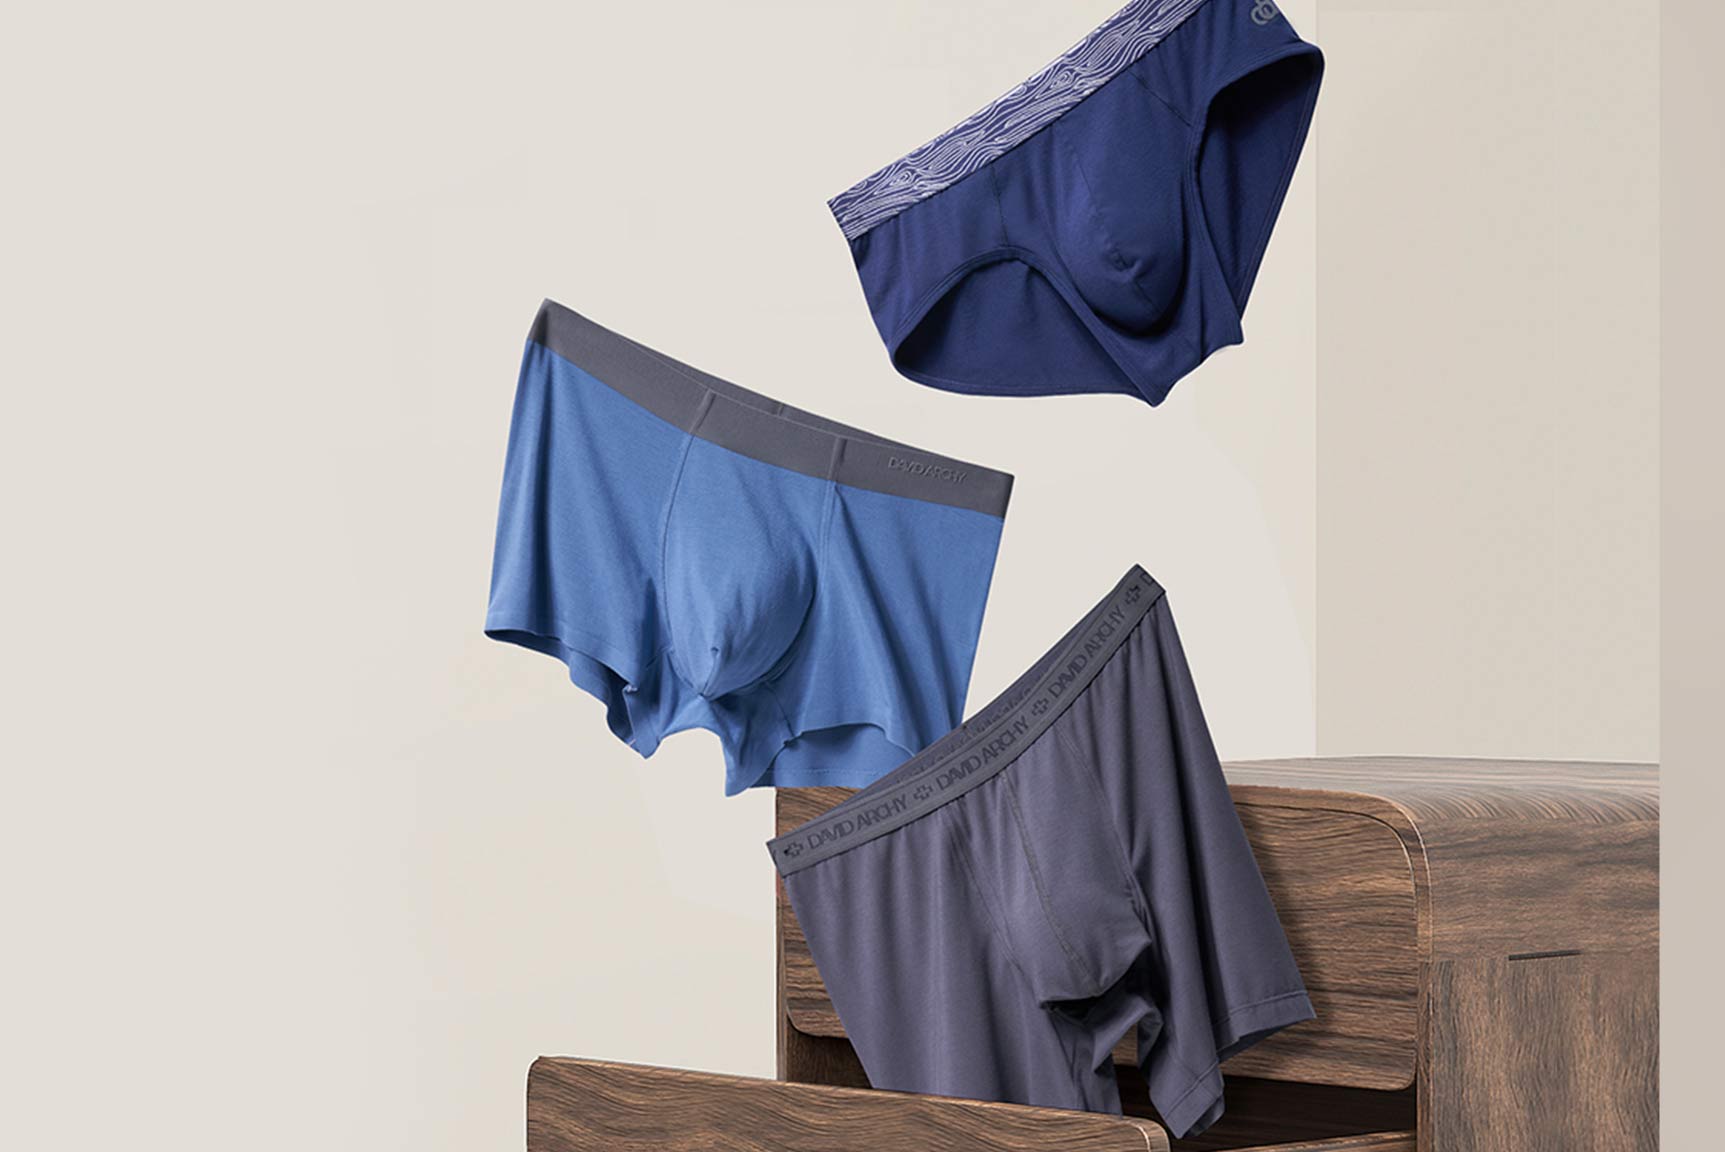 Men's Innerwear Brand DAVID ARCHY Ranked Top 10 Men's Underwear